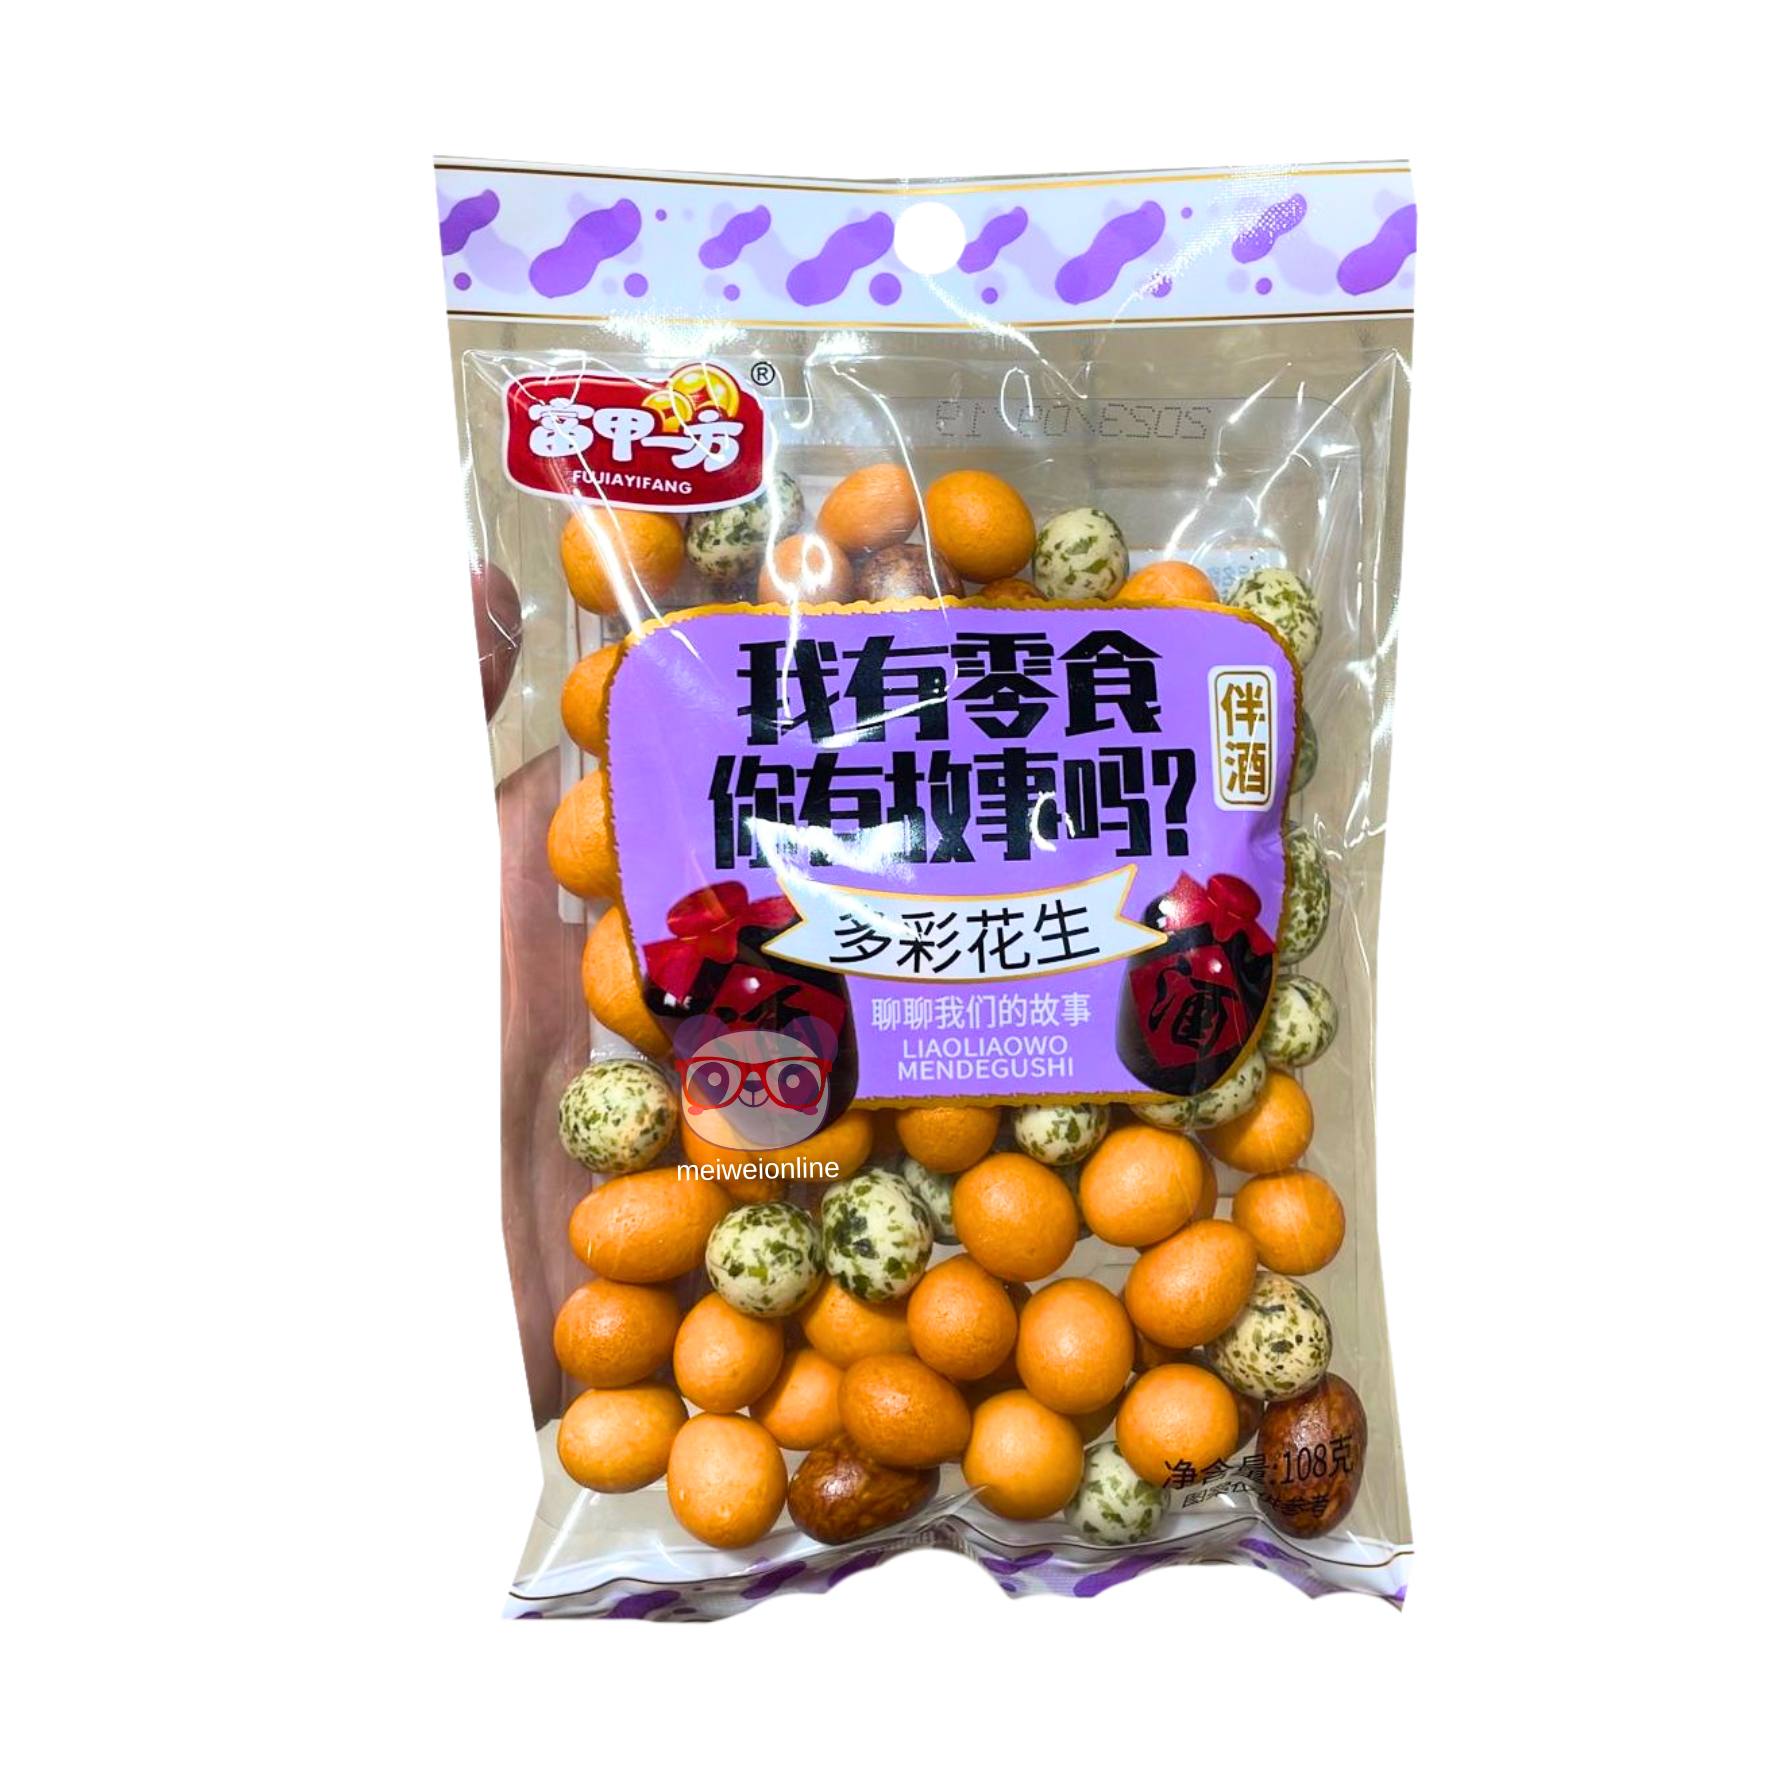 Amendoim colorido - Fujiayifang 108g